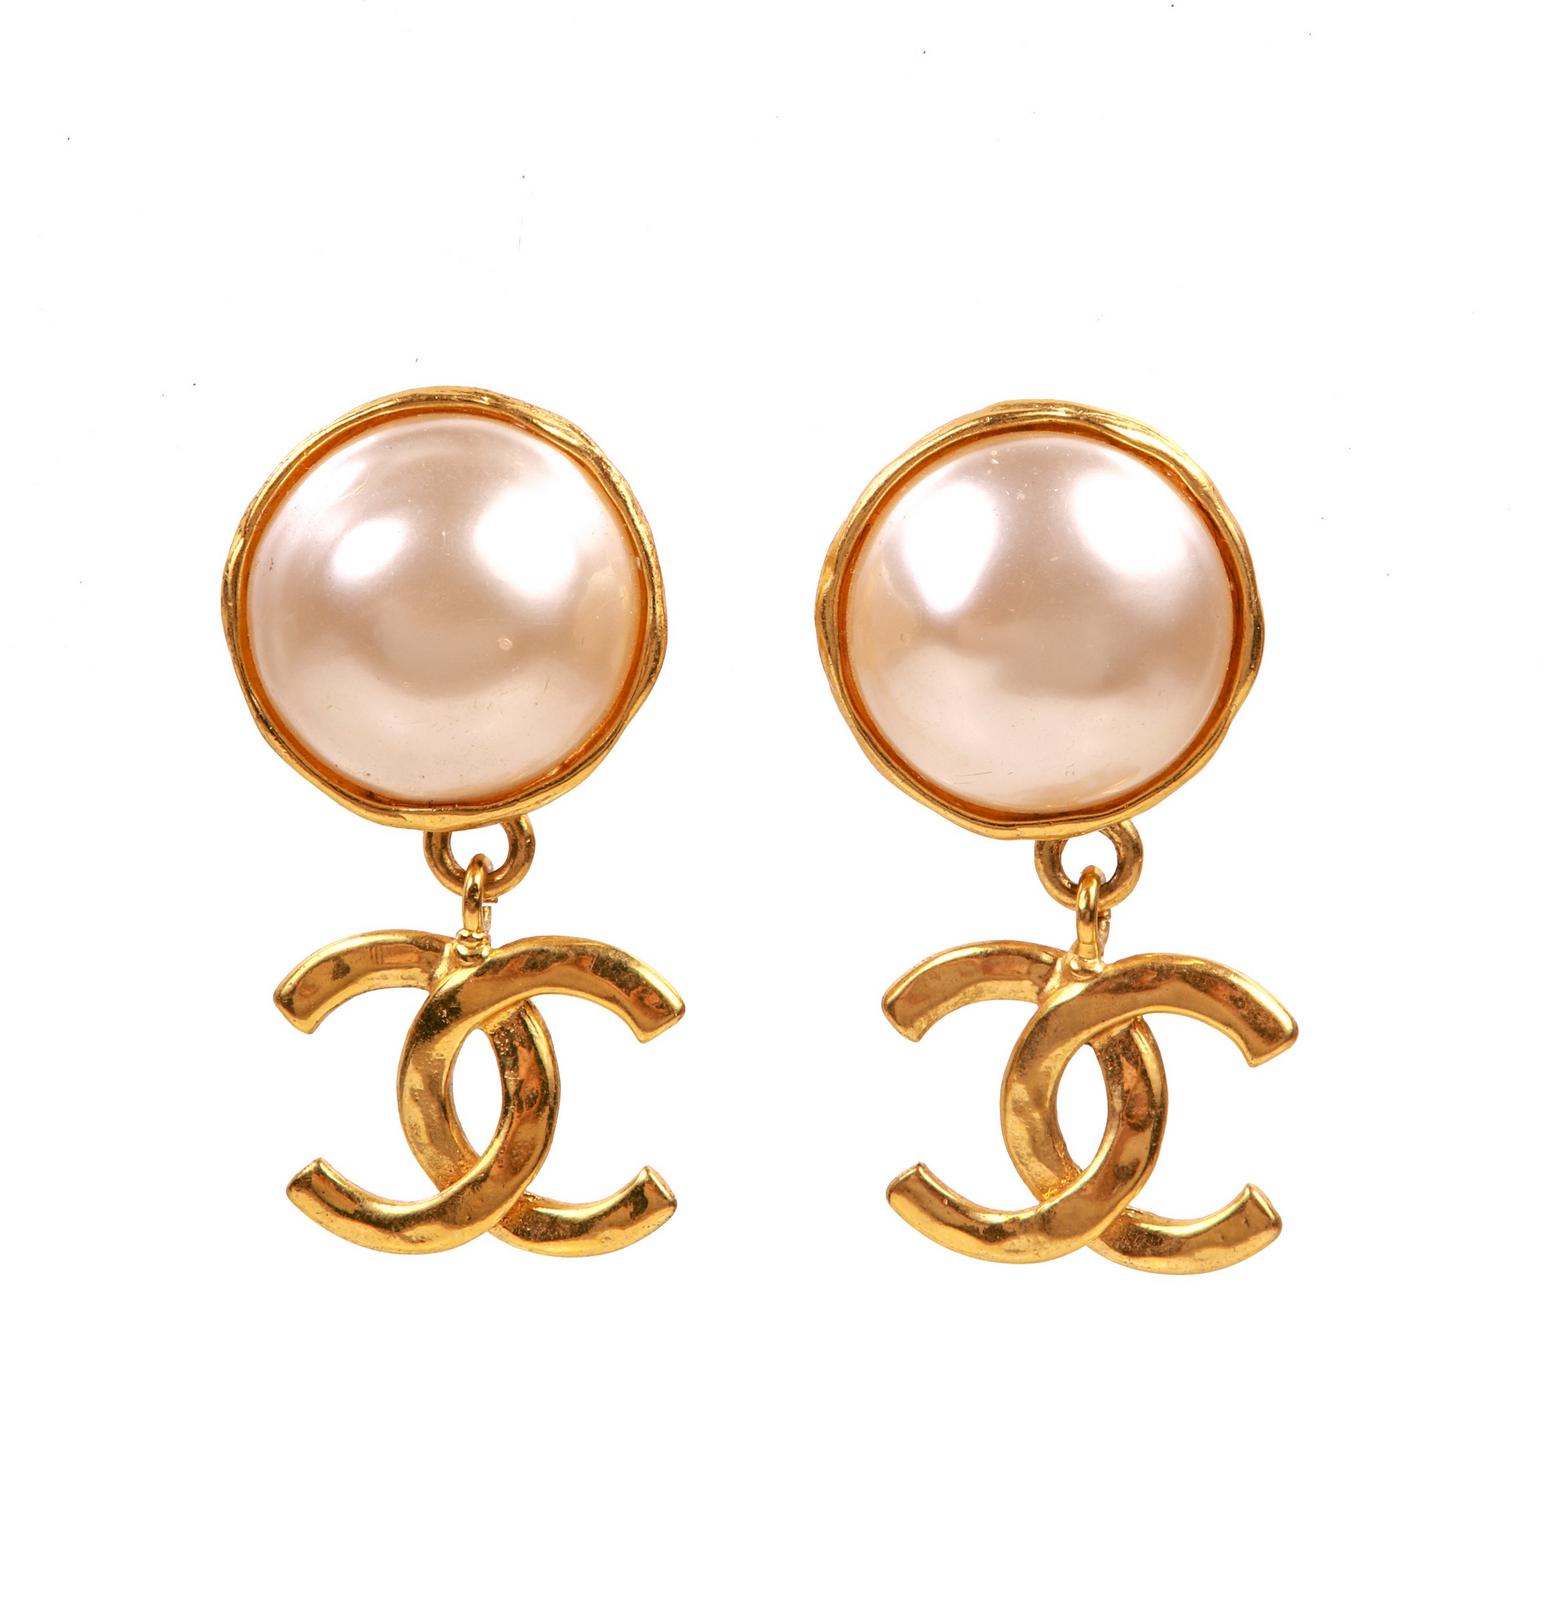 Chanel Earrings Pearl Drop